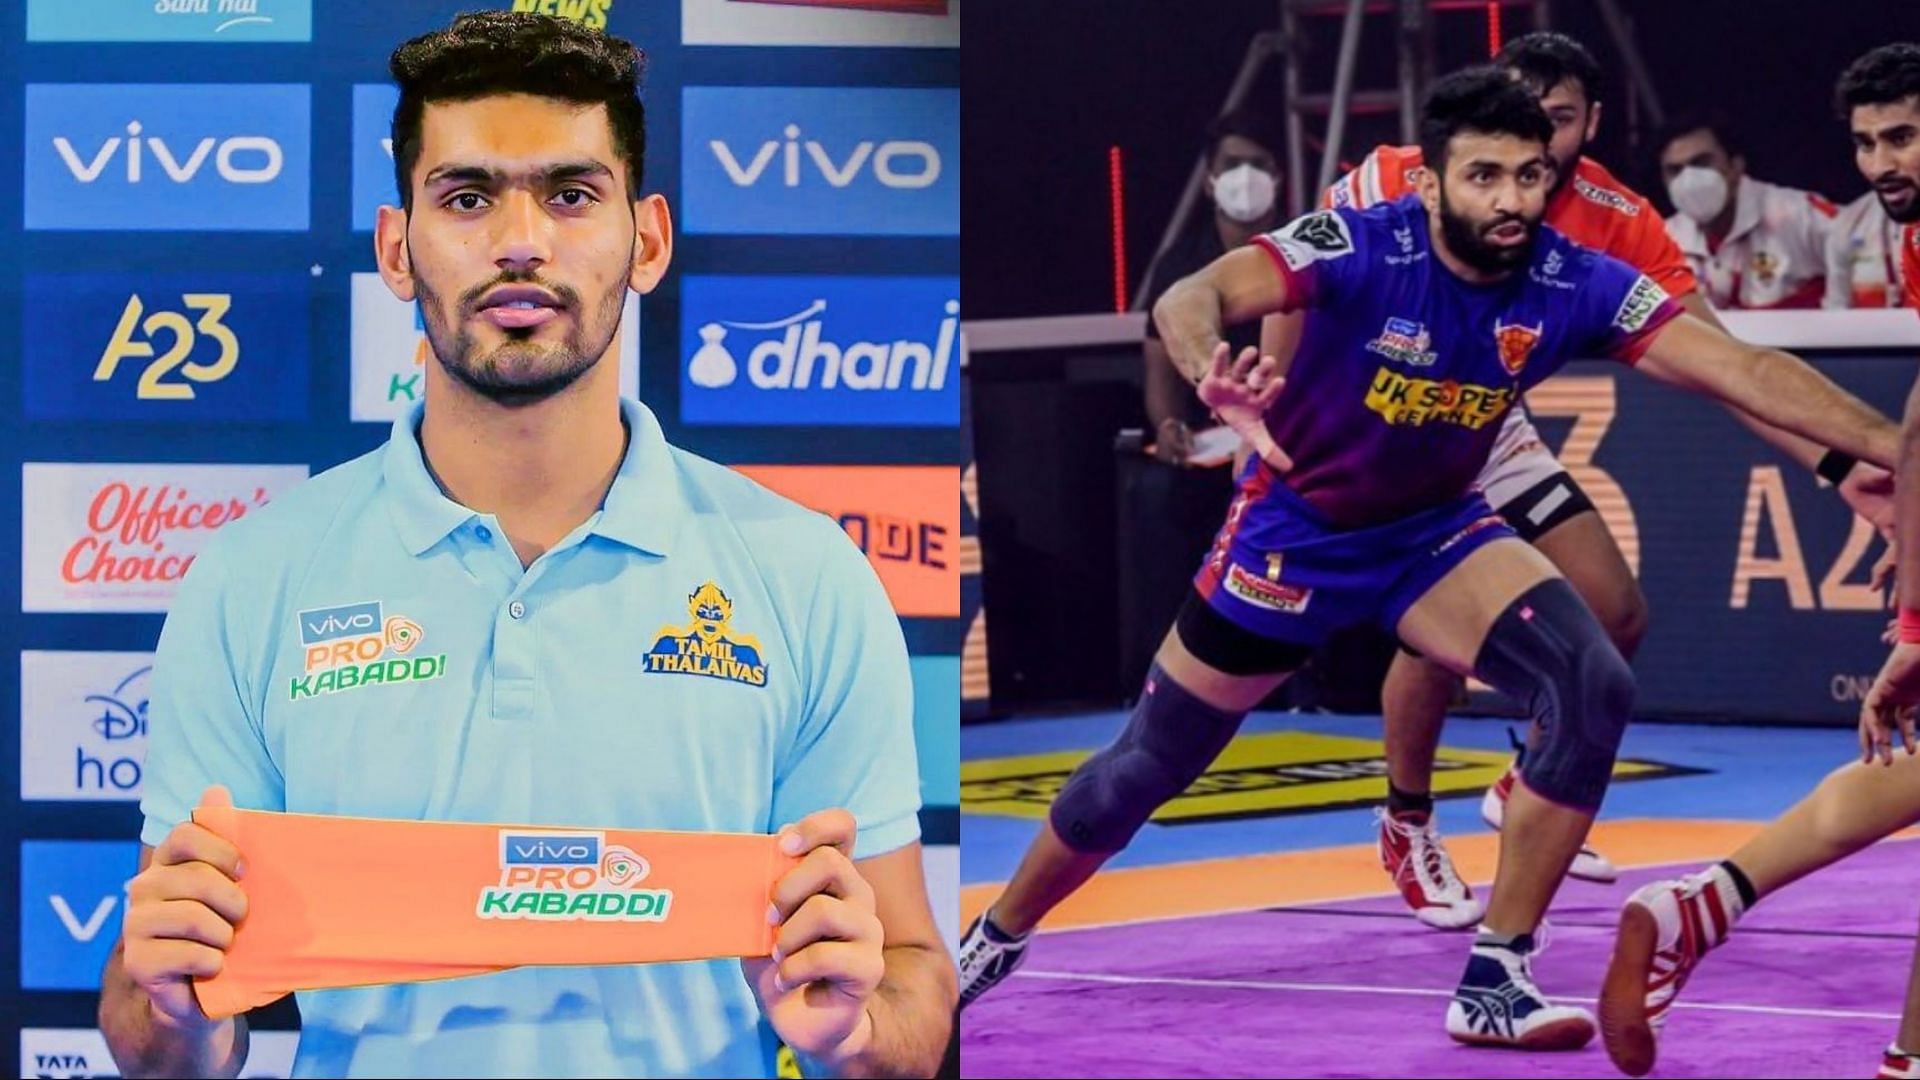 Sagar and Vijay were two of the top performers last week in Pro Kabaddi 2022 (Image Source: Instagram)